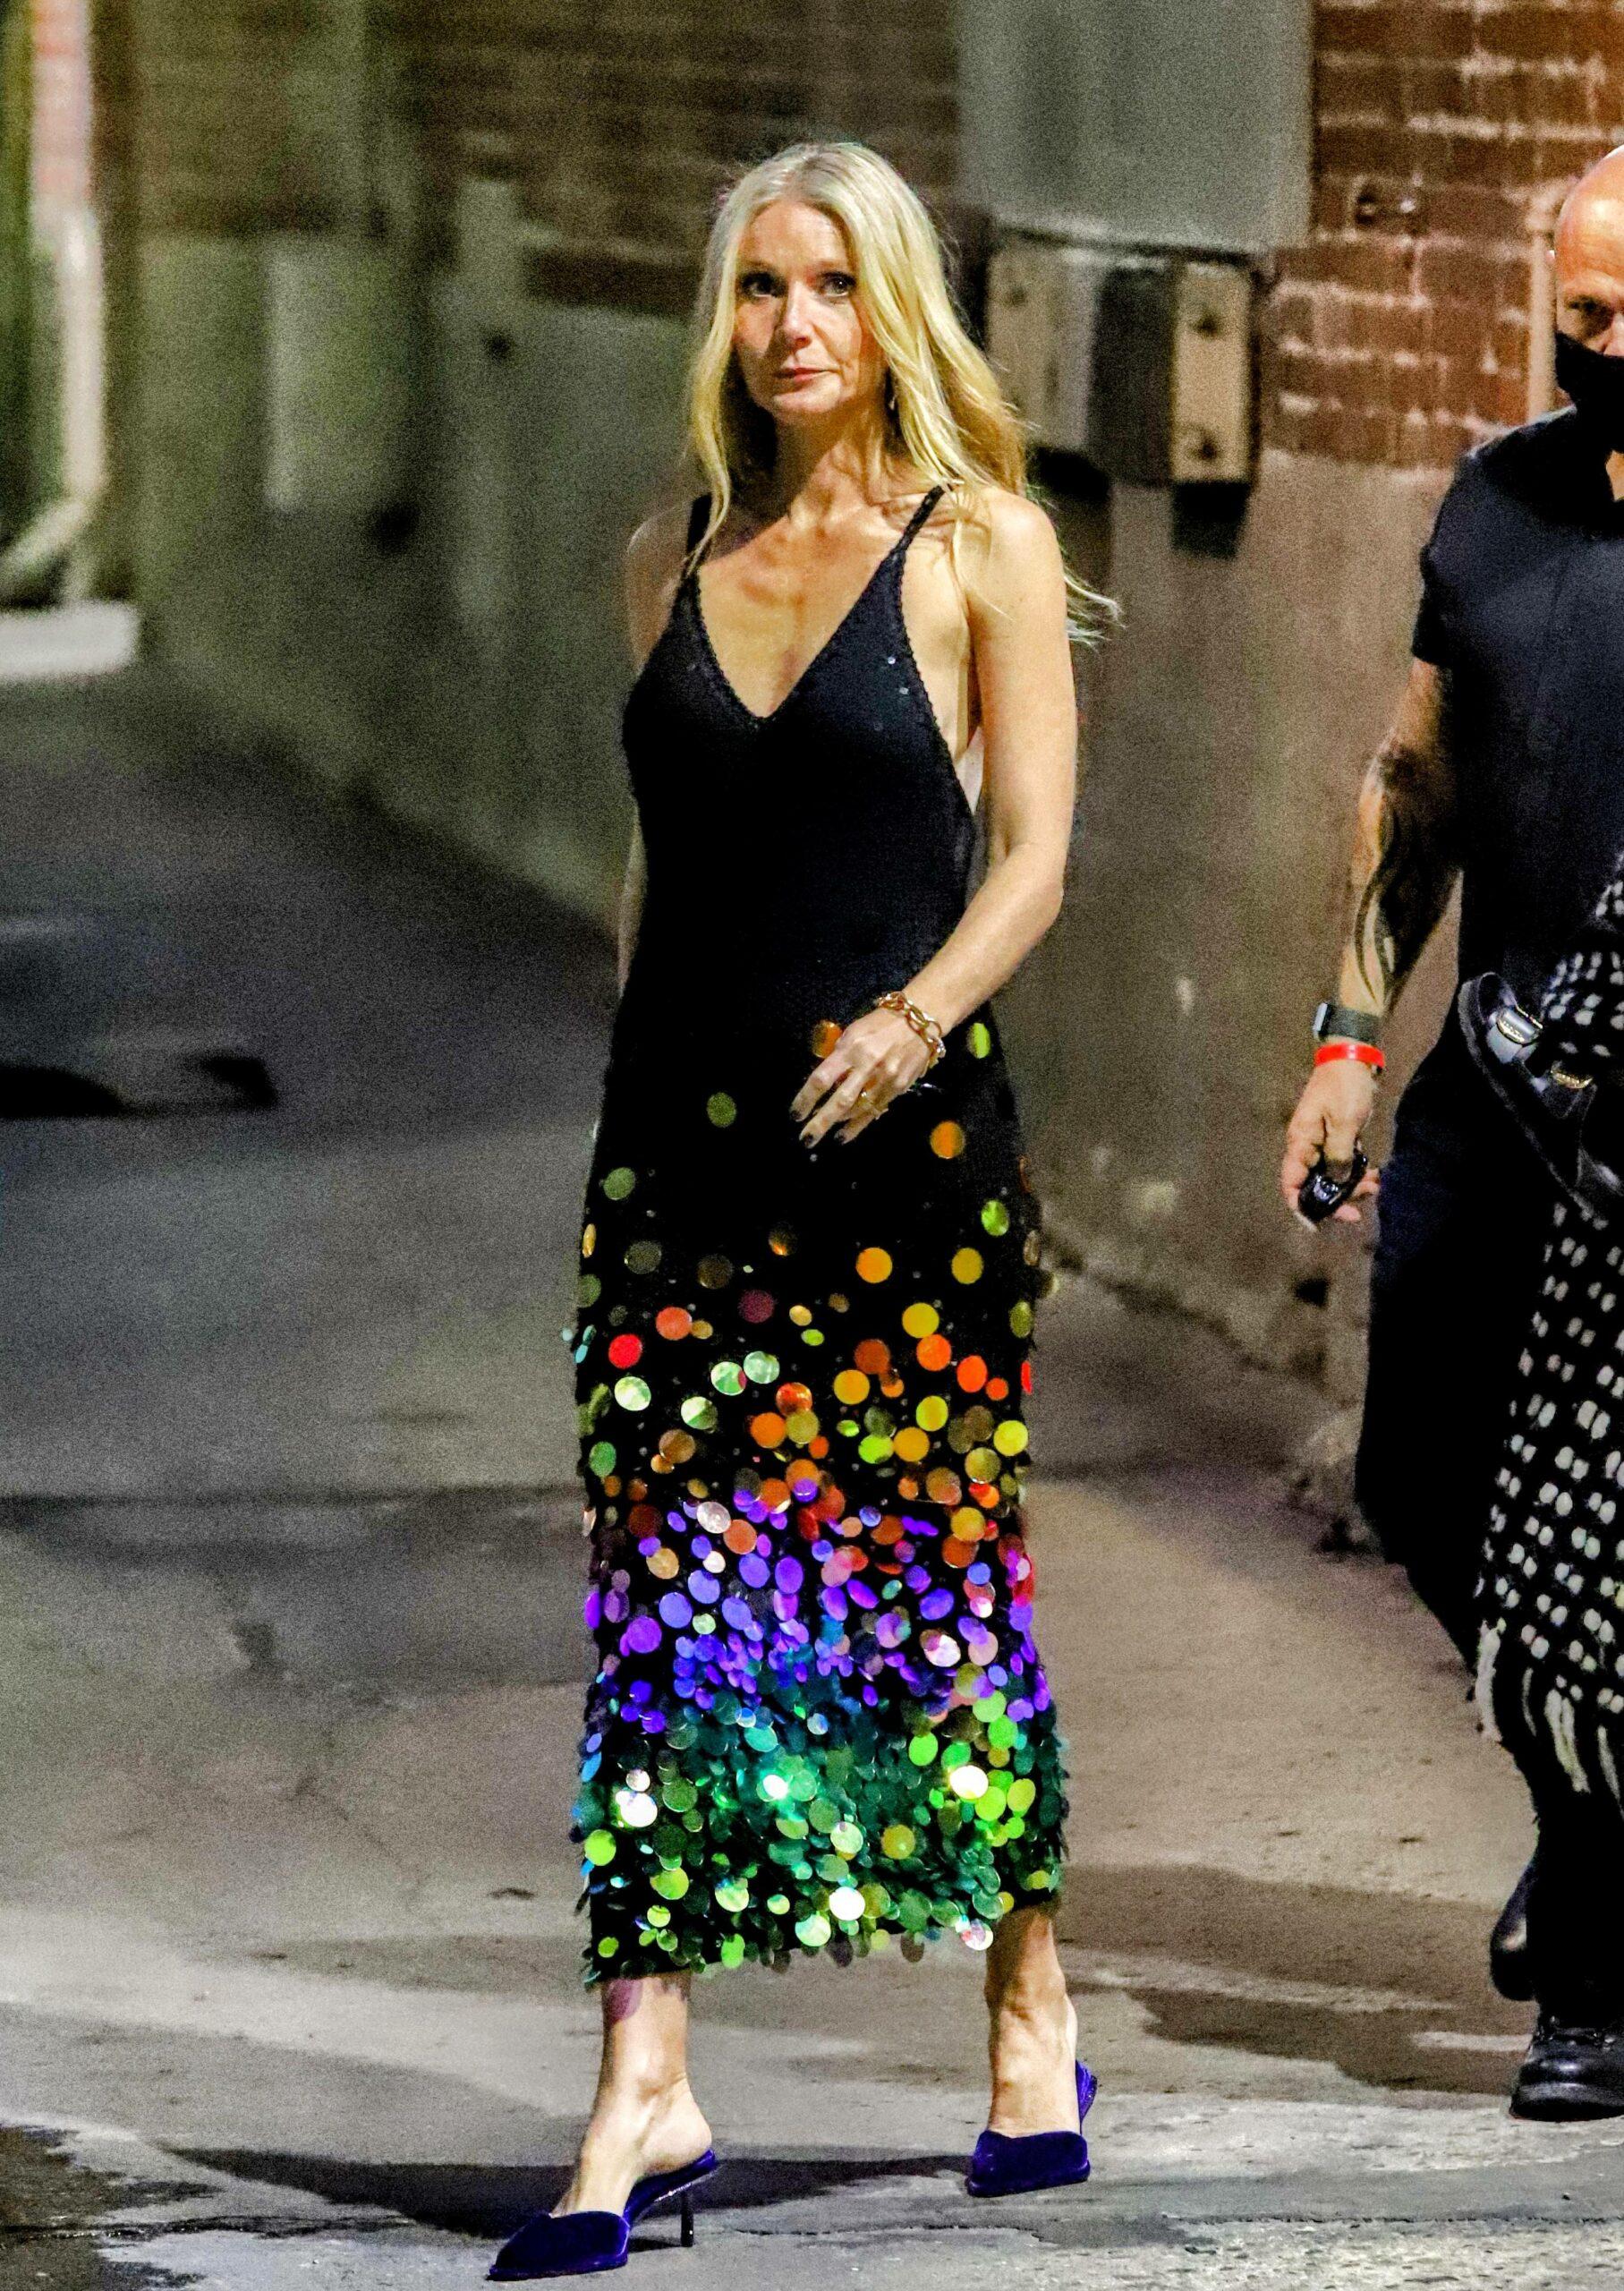 Gwyneth Paltrow seen leaving Jimmy Kimmel in a rainbow sequence LBD. 08 Nov 2021 Pictured: Gwyneth Paltrow. Photo credit: APEX / MEGA TheMegaAgency.com +1 888 505 6342 (Mega Agency TagID: MEGA803540_001.jpg) [Photo via Mega Agency]